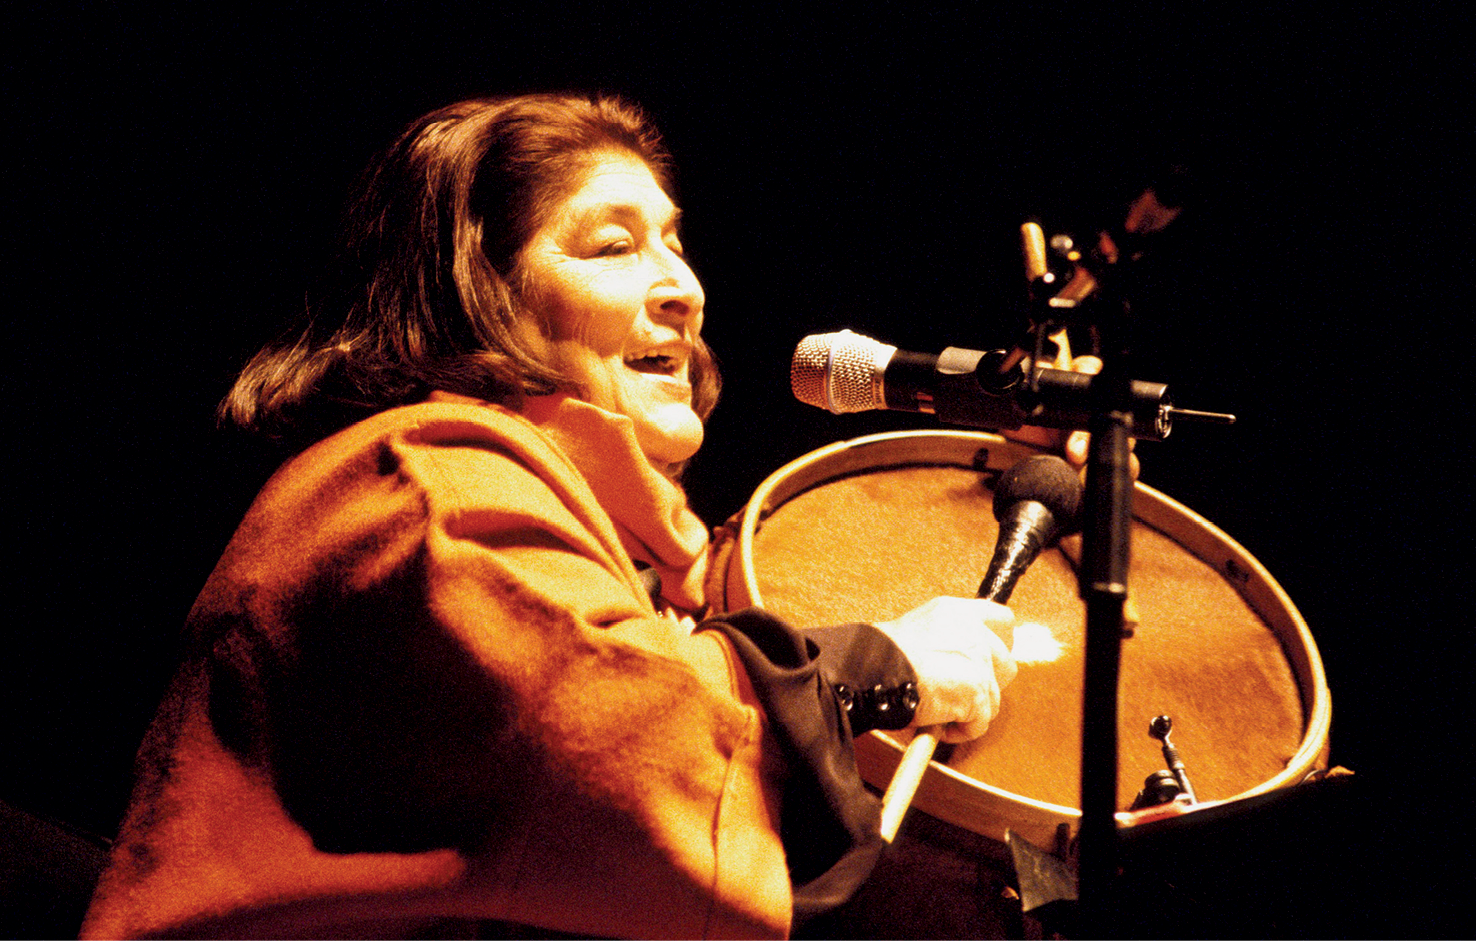 Fotografia. Uma mulher com cabelos na altura dos ombros, usando um casaco. Ela está sentada, com a boca aberta perto de um microfone e segurando com uma das mãos um bumbo e, com a outra, uma baqueta.